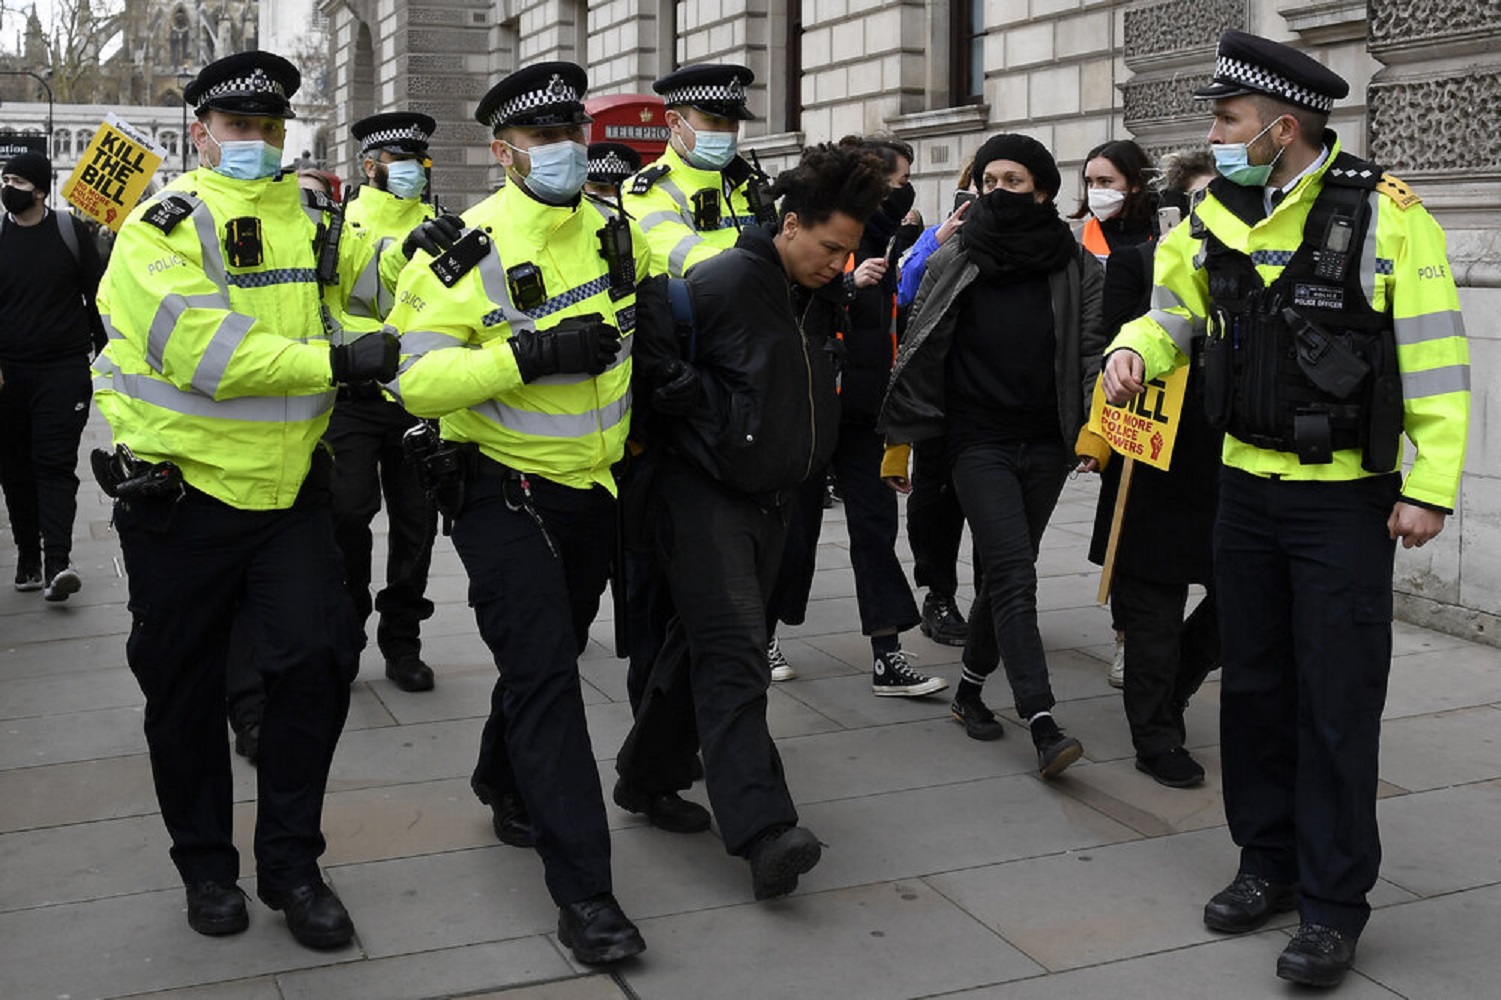 دستگیری ستاره لیگ برتری به جزم تجاوز در انگلیس پلیس خبر جنجالی را تأیید کرد